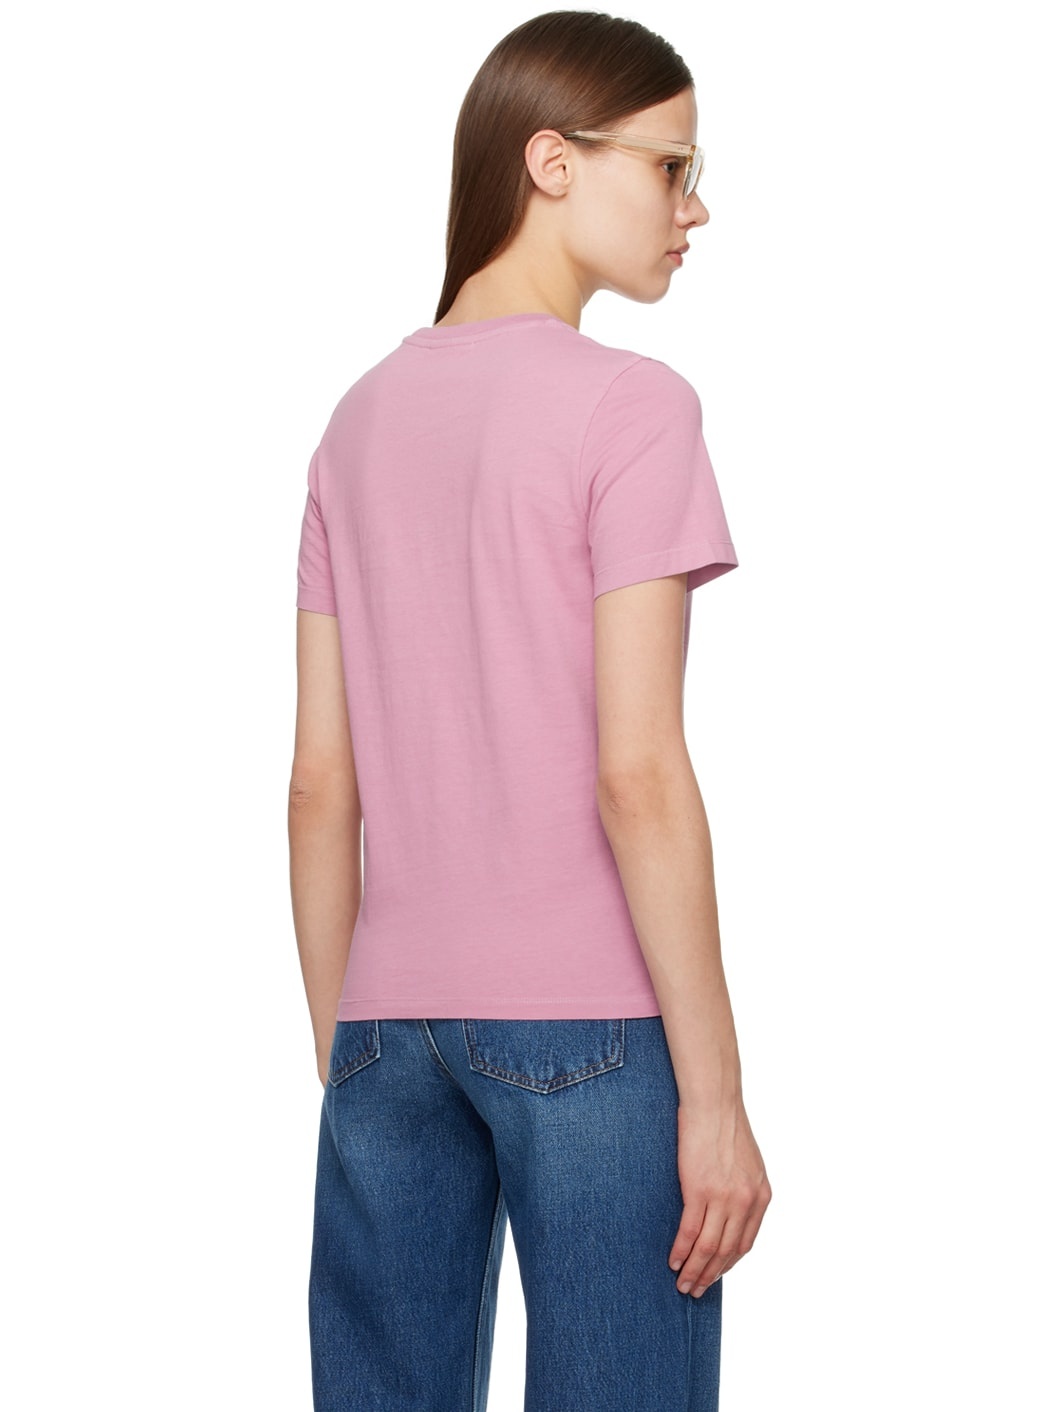 Pink Baby Fox T-Shirt - 3